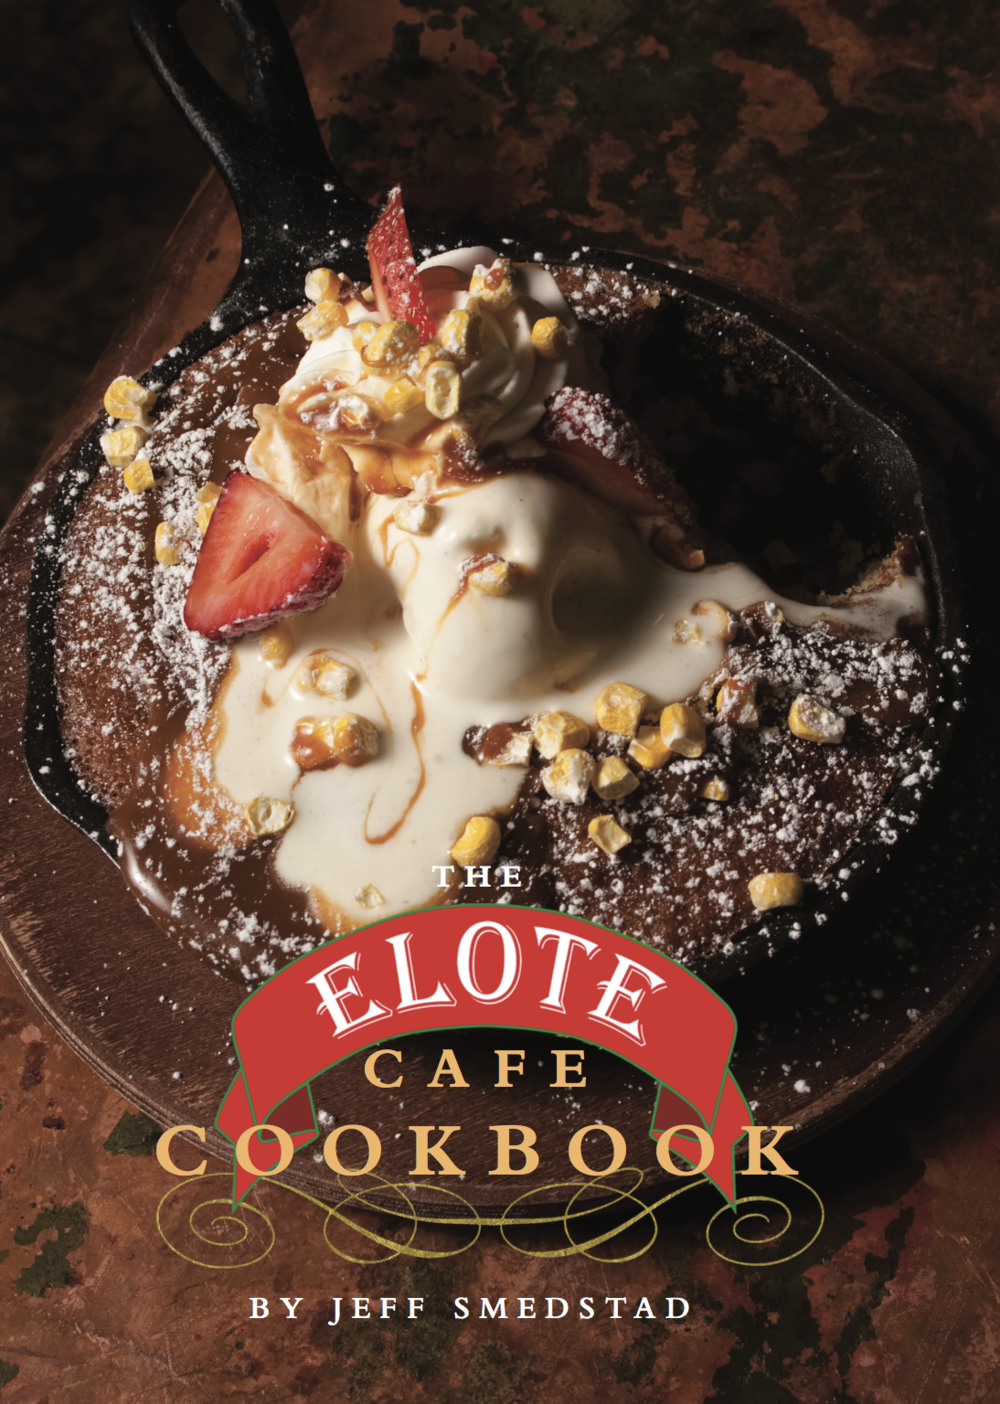 Cookbooks — Elote